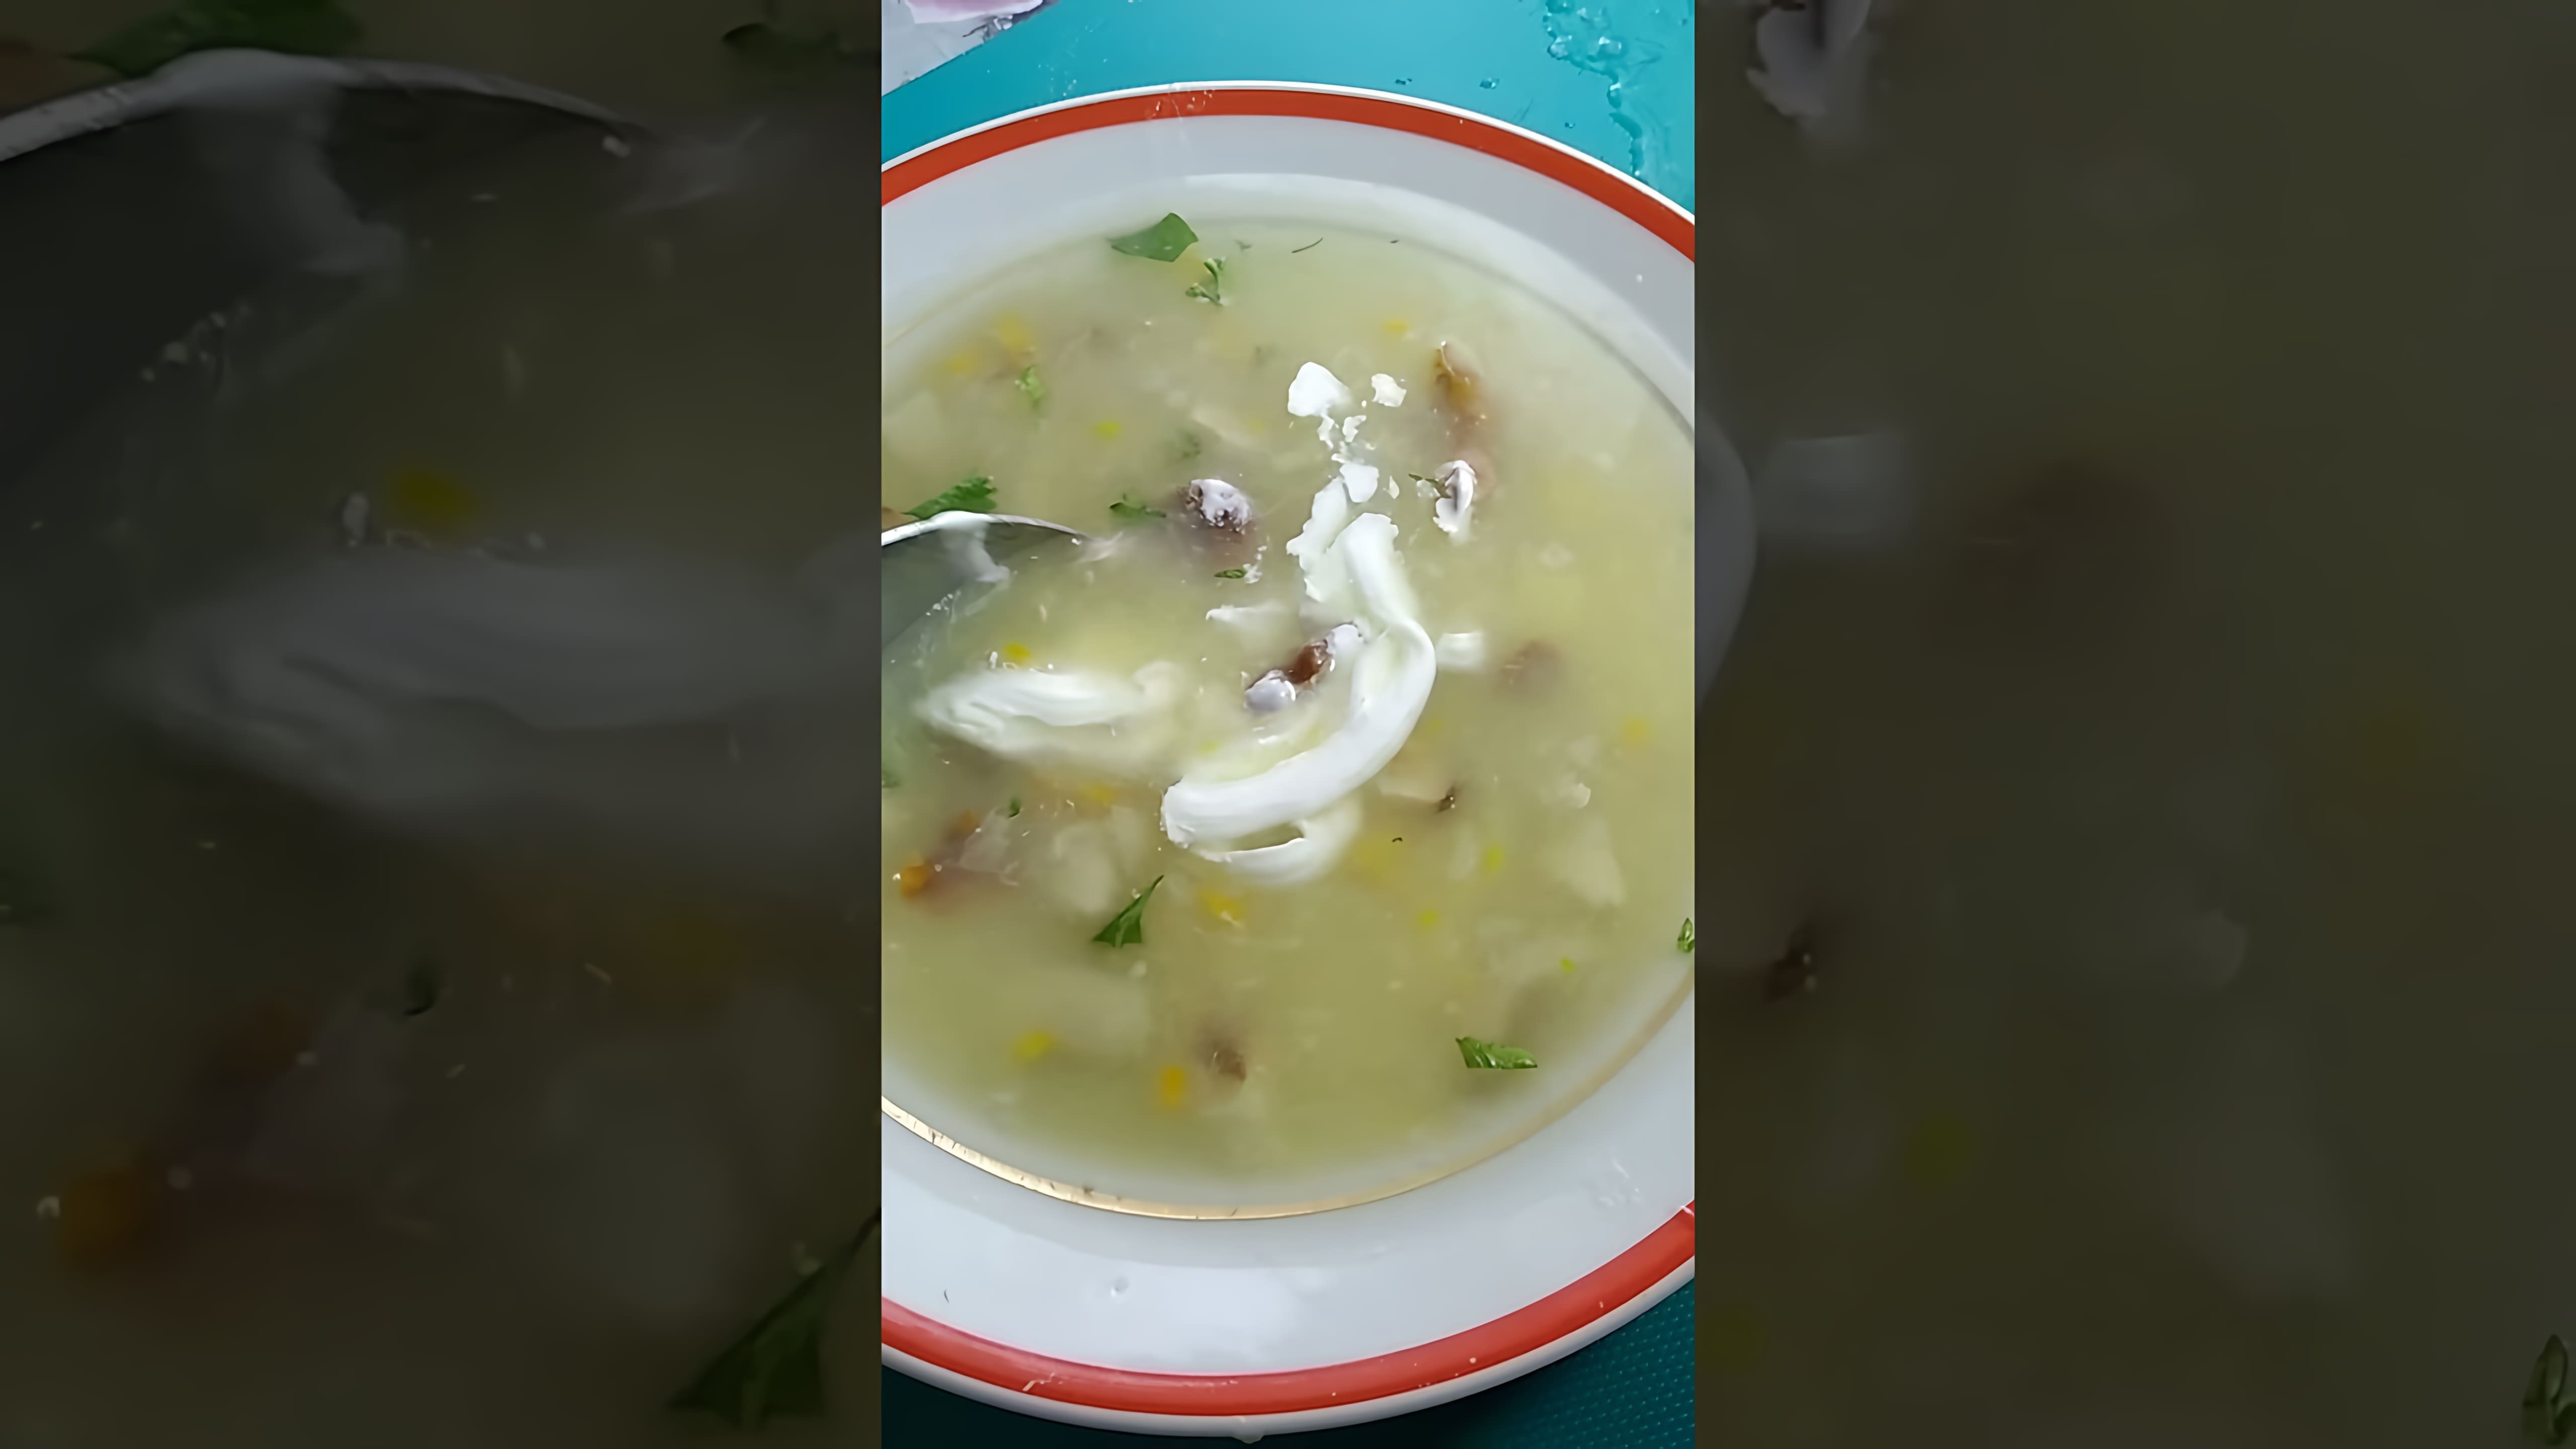 Грибной суп из боровиков и лисичек - это вкусное и питательное блюдо, которое можно приготовить в домашних условиях